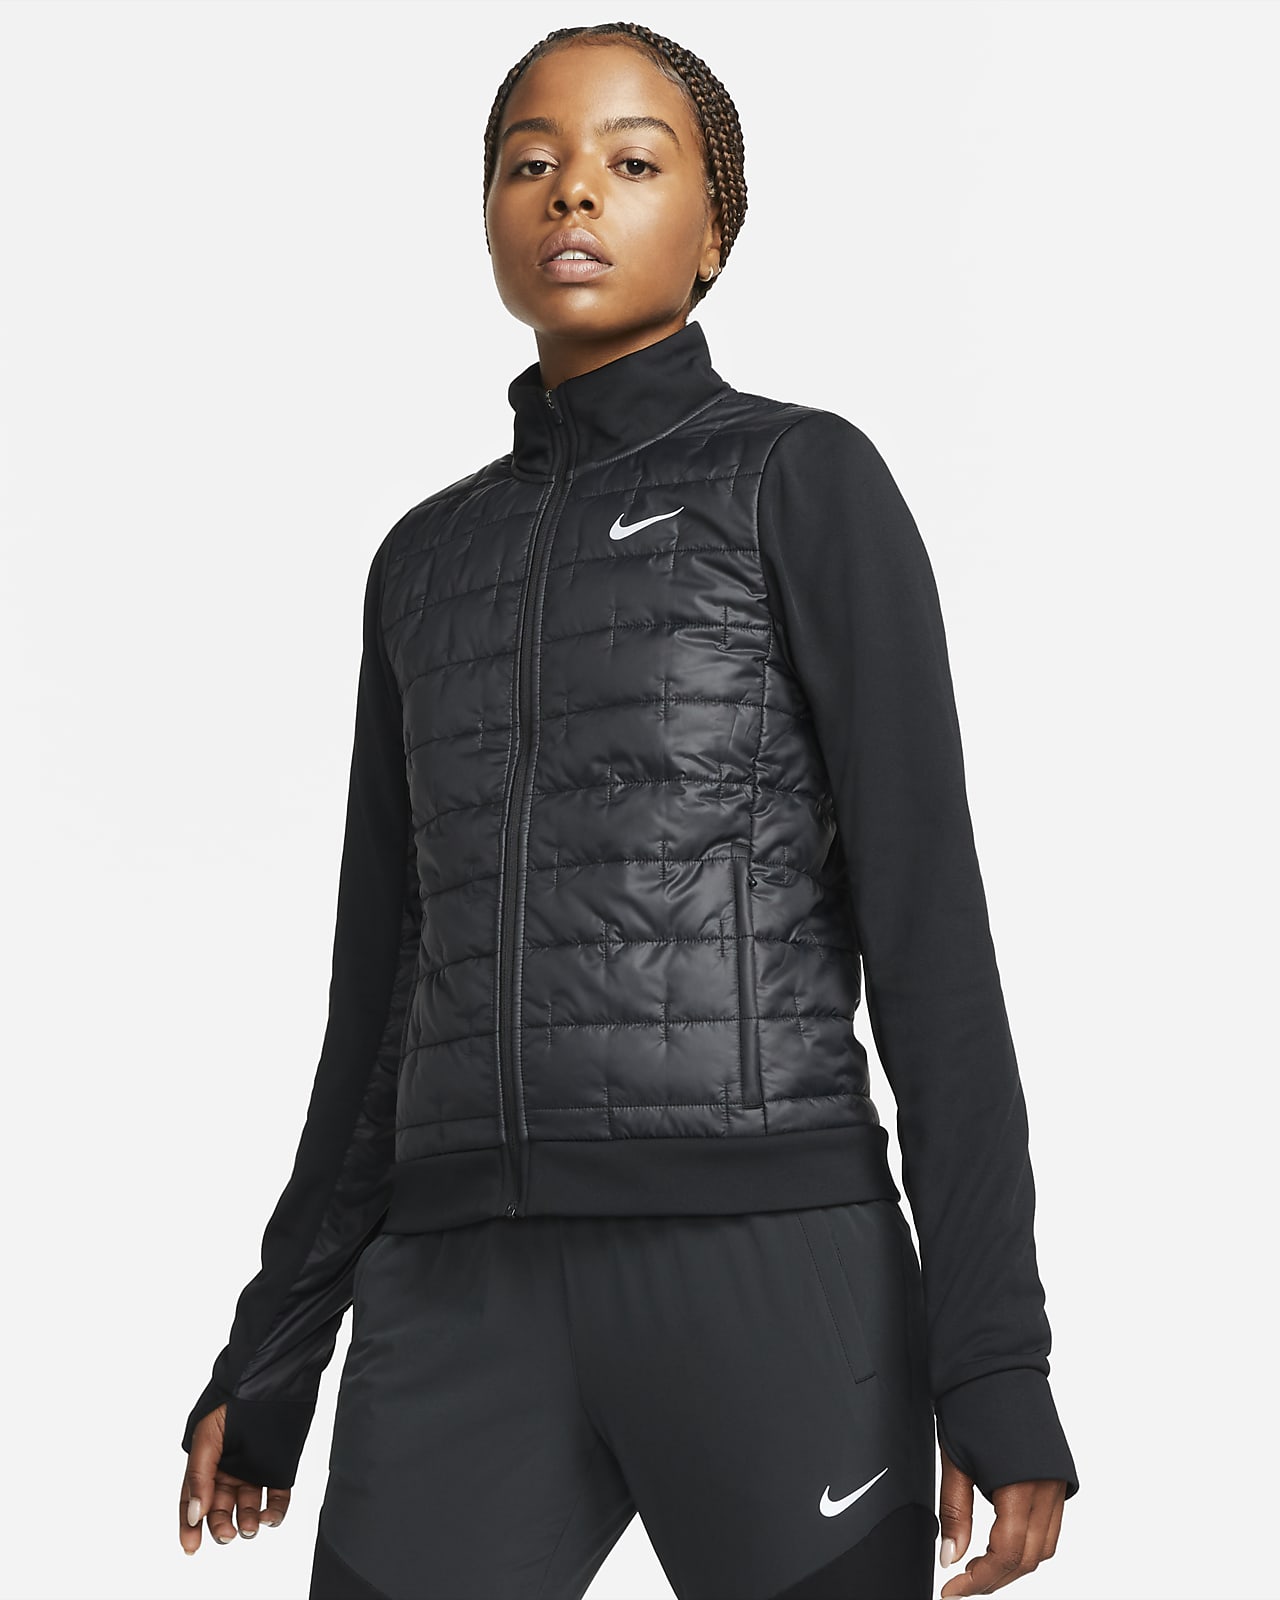 lavanda Vulgaridad Mirar fijamente Nike Therma-FIT Chaqueta de running con relleno sintético - Mujer. Nike ES